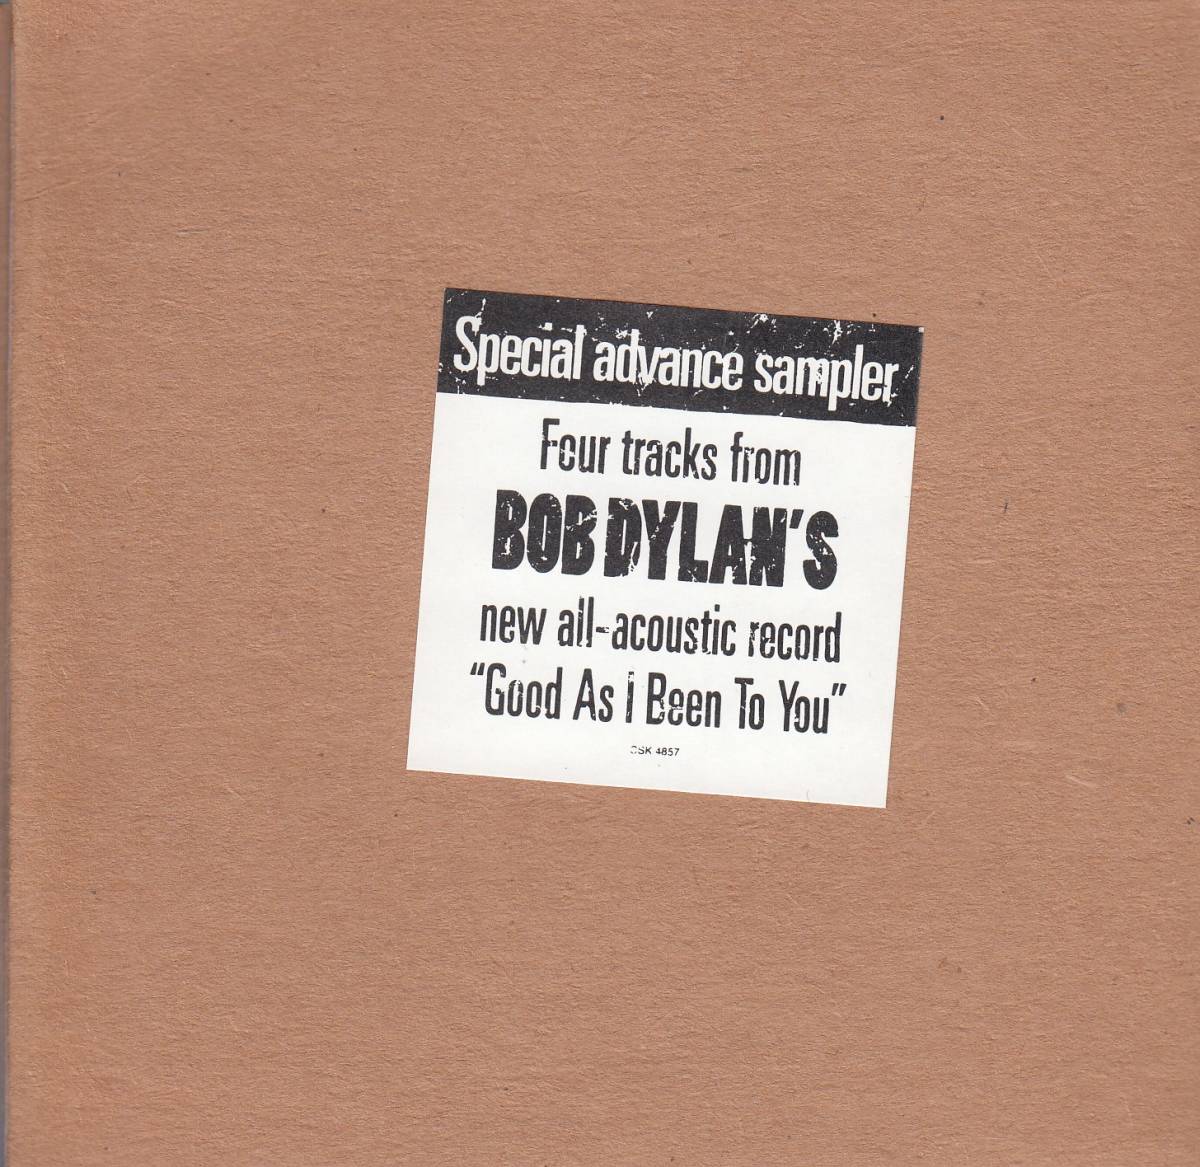  транспорт Bob *ti Ran / Bob Dylan Acoustic не продается CD* стандарт номер #CSK-4857* бесплатная доставка # быстрое решение * переговоры иметь 